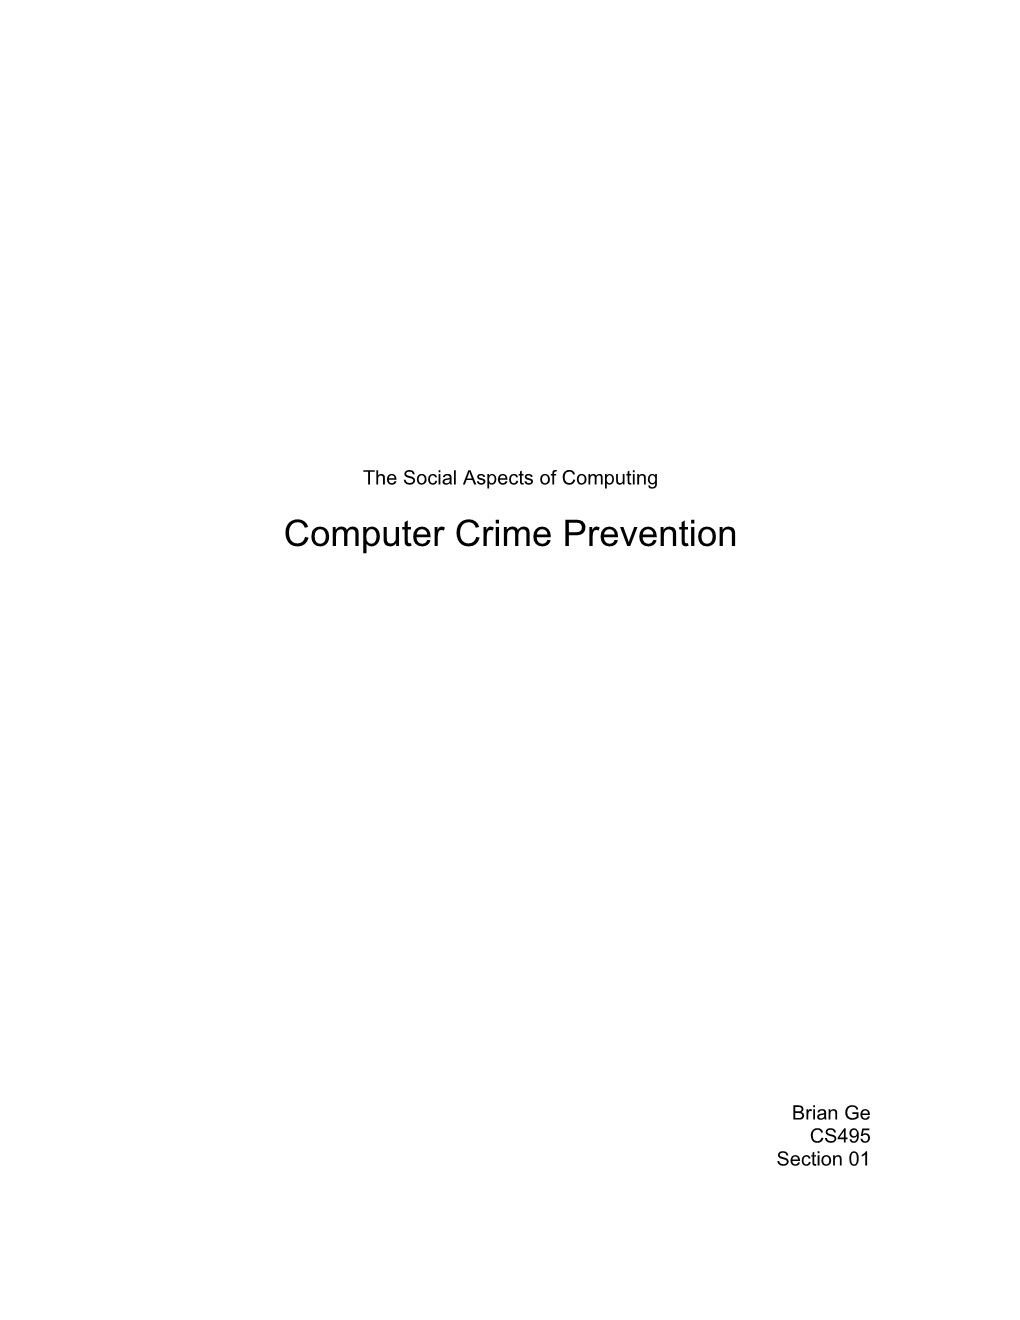 Computer Crime Prevention